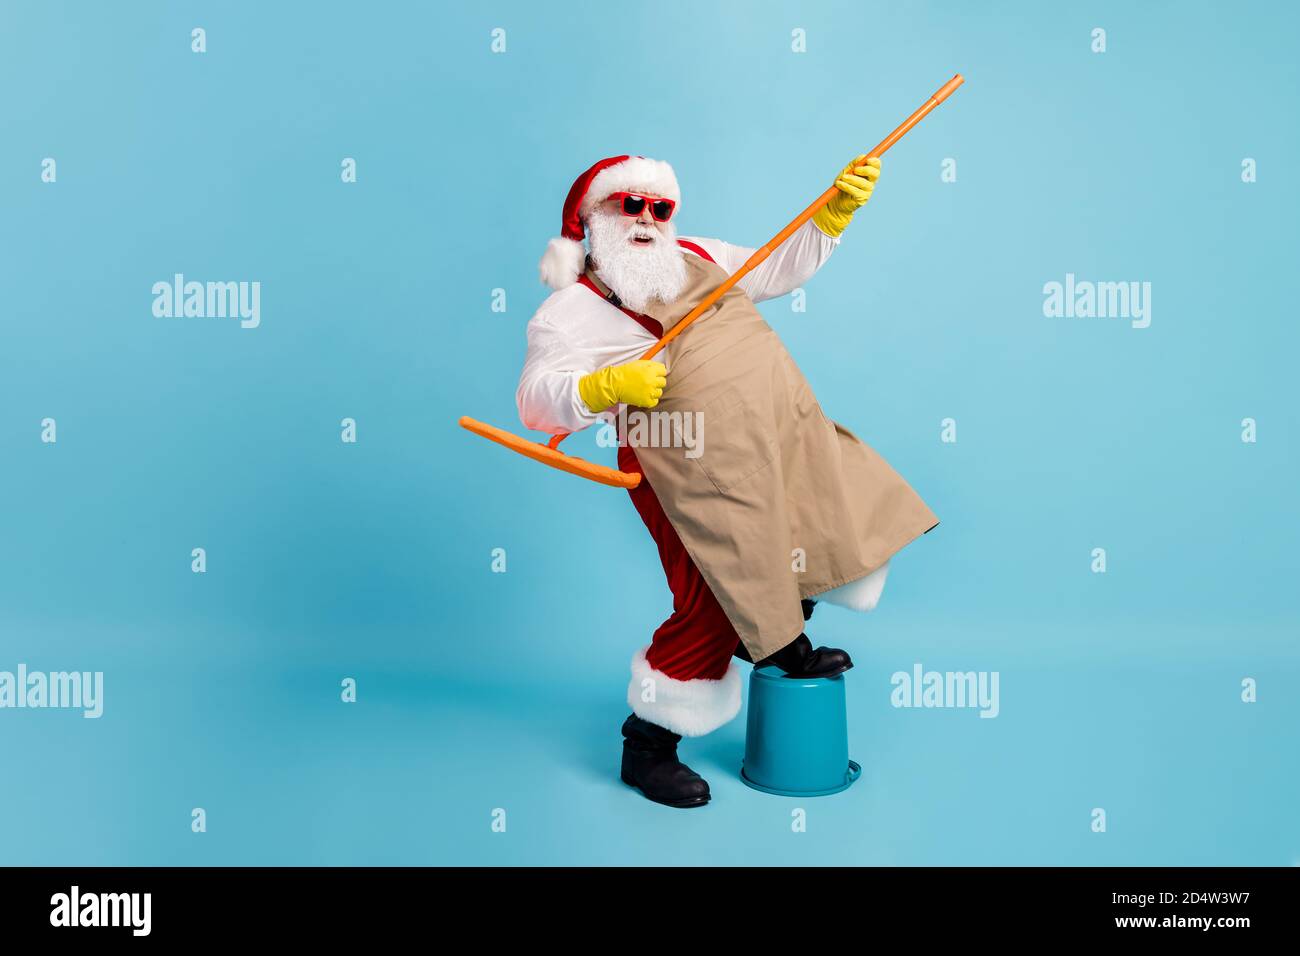 In voller Länge Foto von Rentner alten Mann grauen Bart halten Mop Bein  Eimer vorgeben Rocker tragen weihnachtsmann Kostüm Schürze Gummihandschuh  Strumpfband Sonnenglas Stockfotografie - Alamy